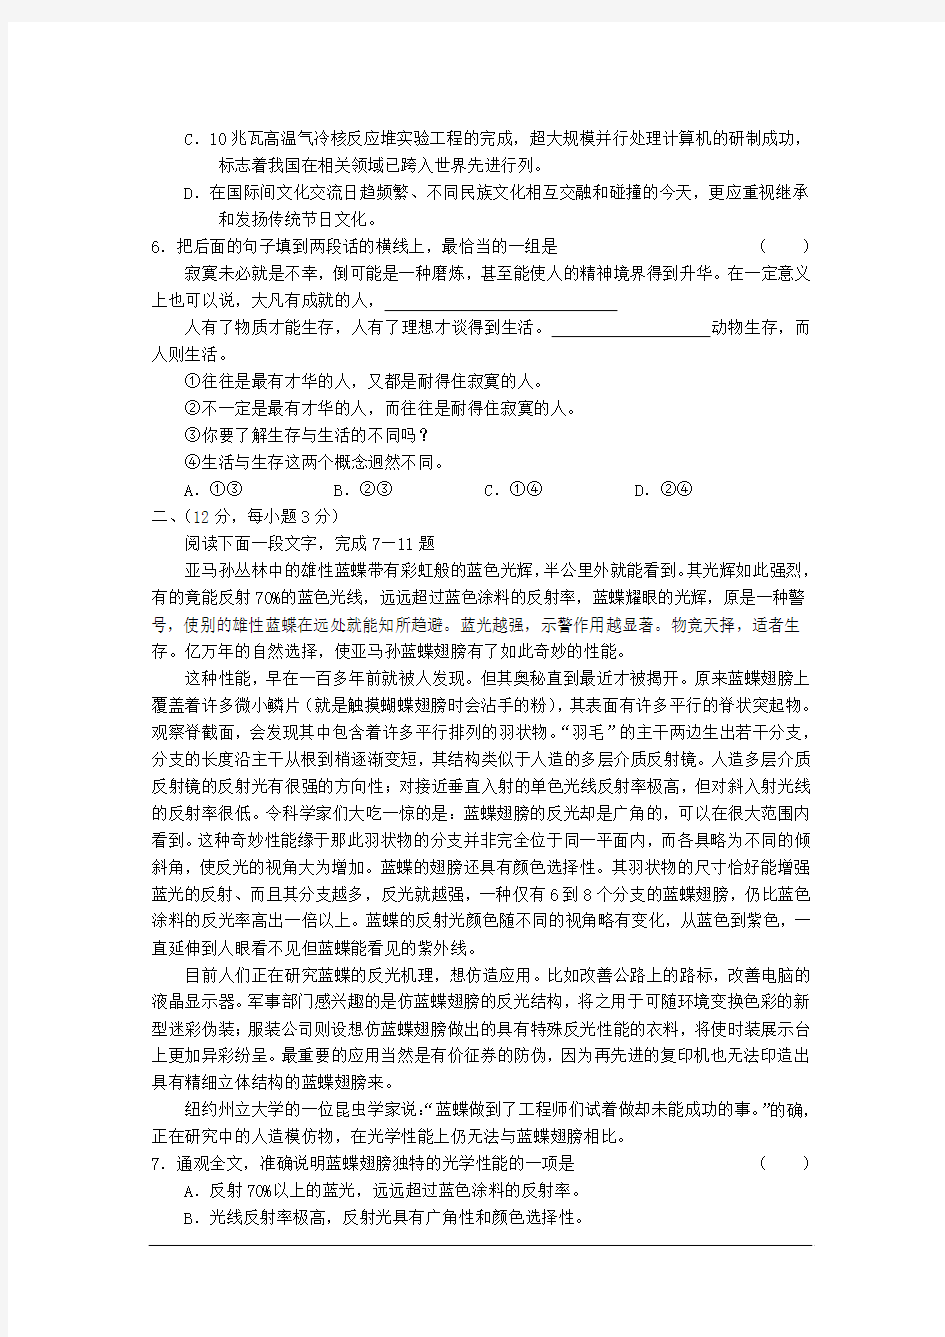 2003年高考试题——语文(北京卷)